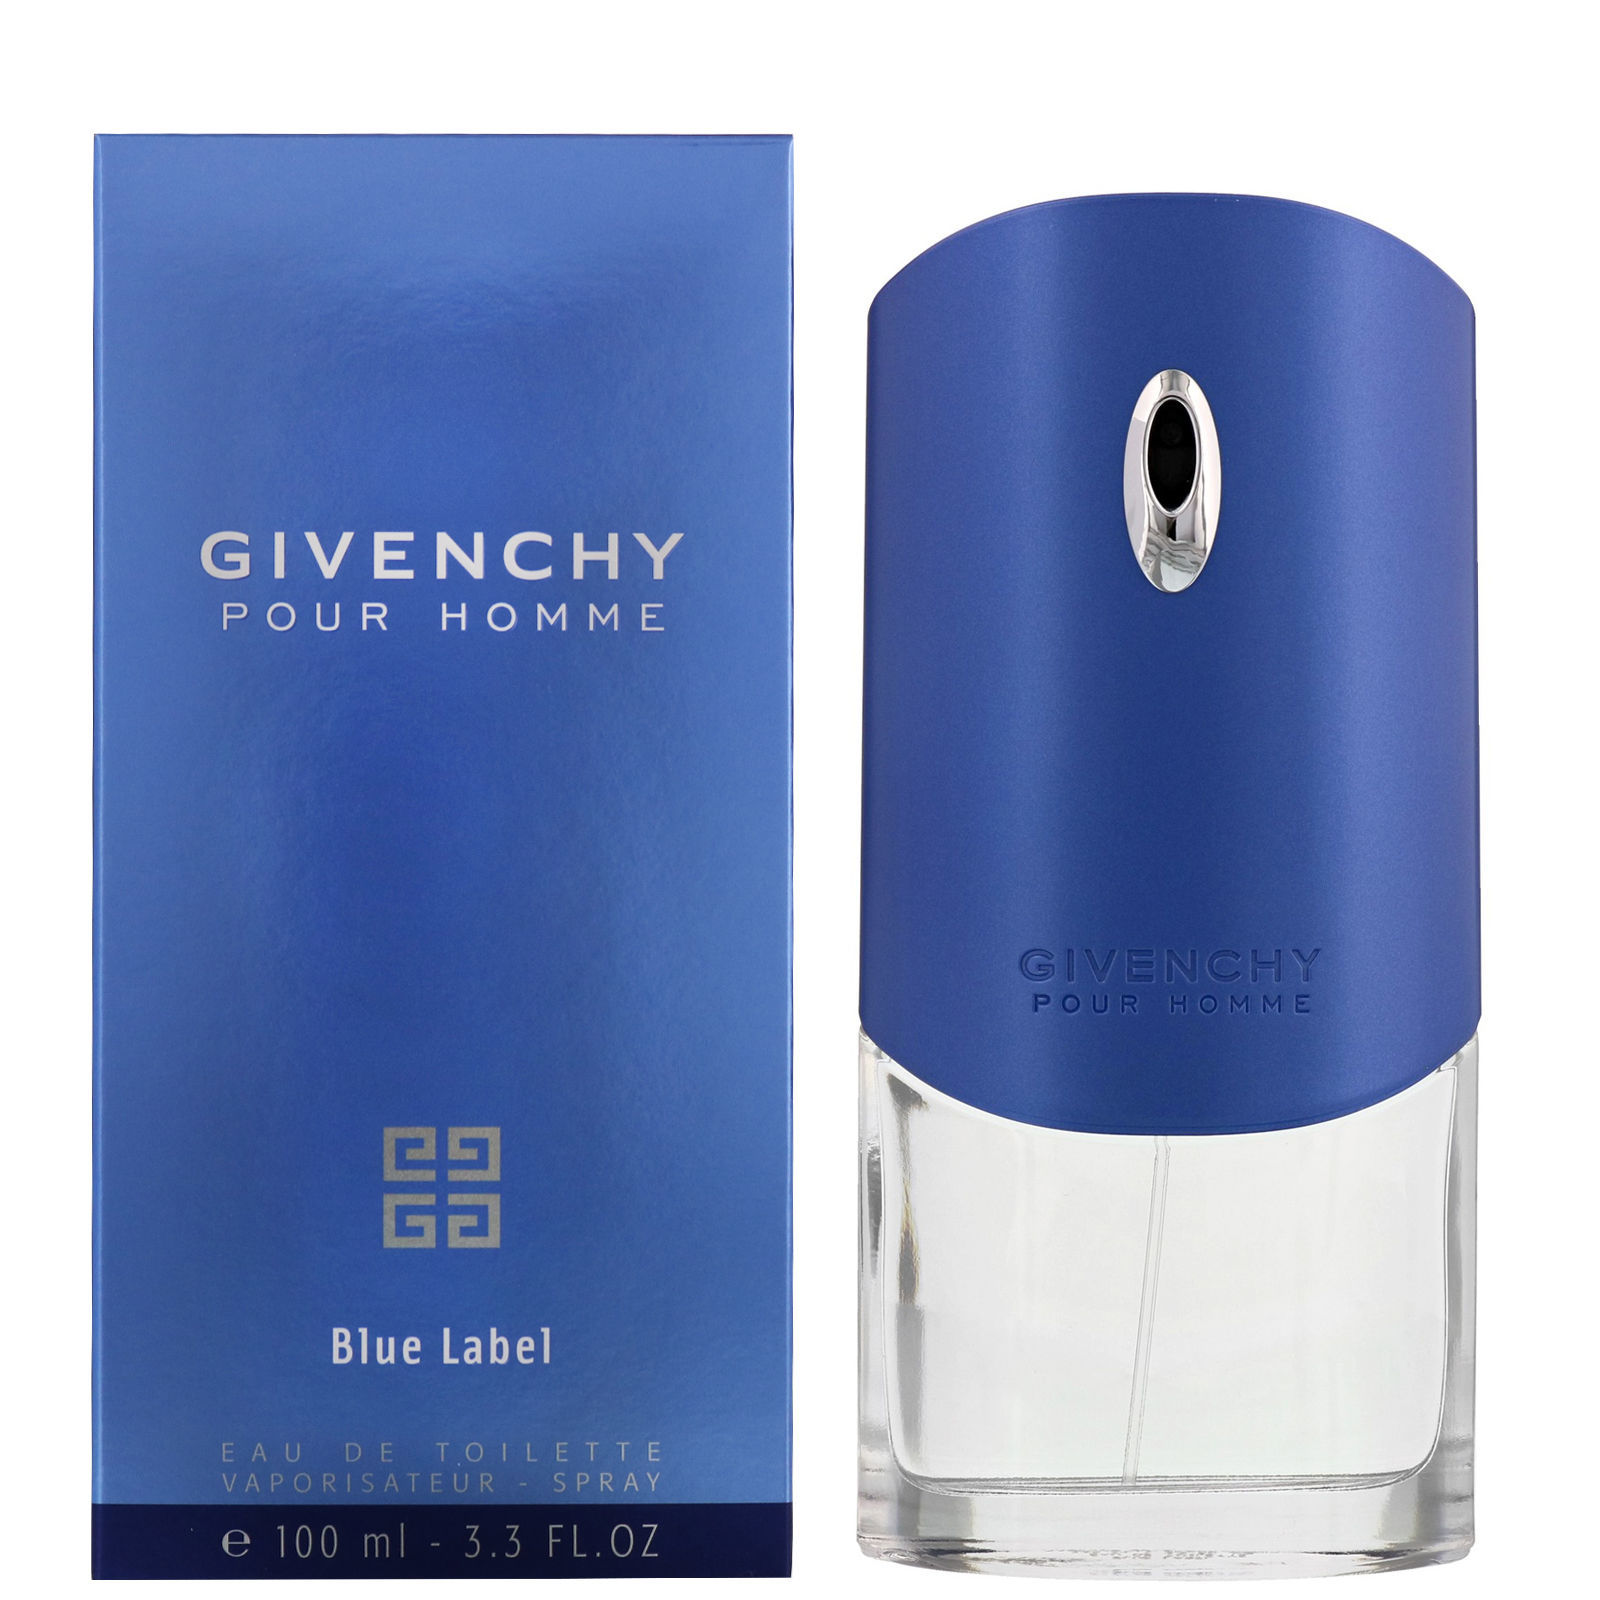 Marcolinia | Buy Givenchy Pour Homme Blue Label Eau de Toilette 100mL ...